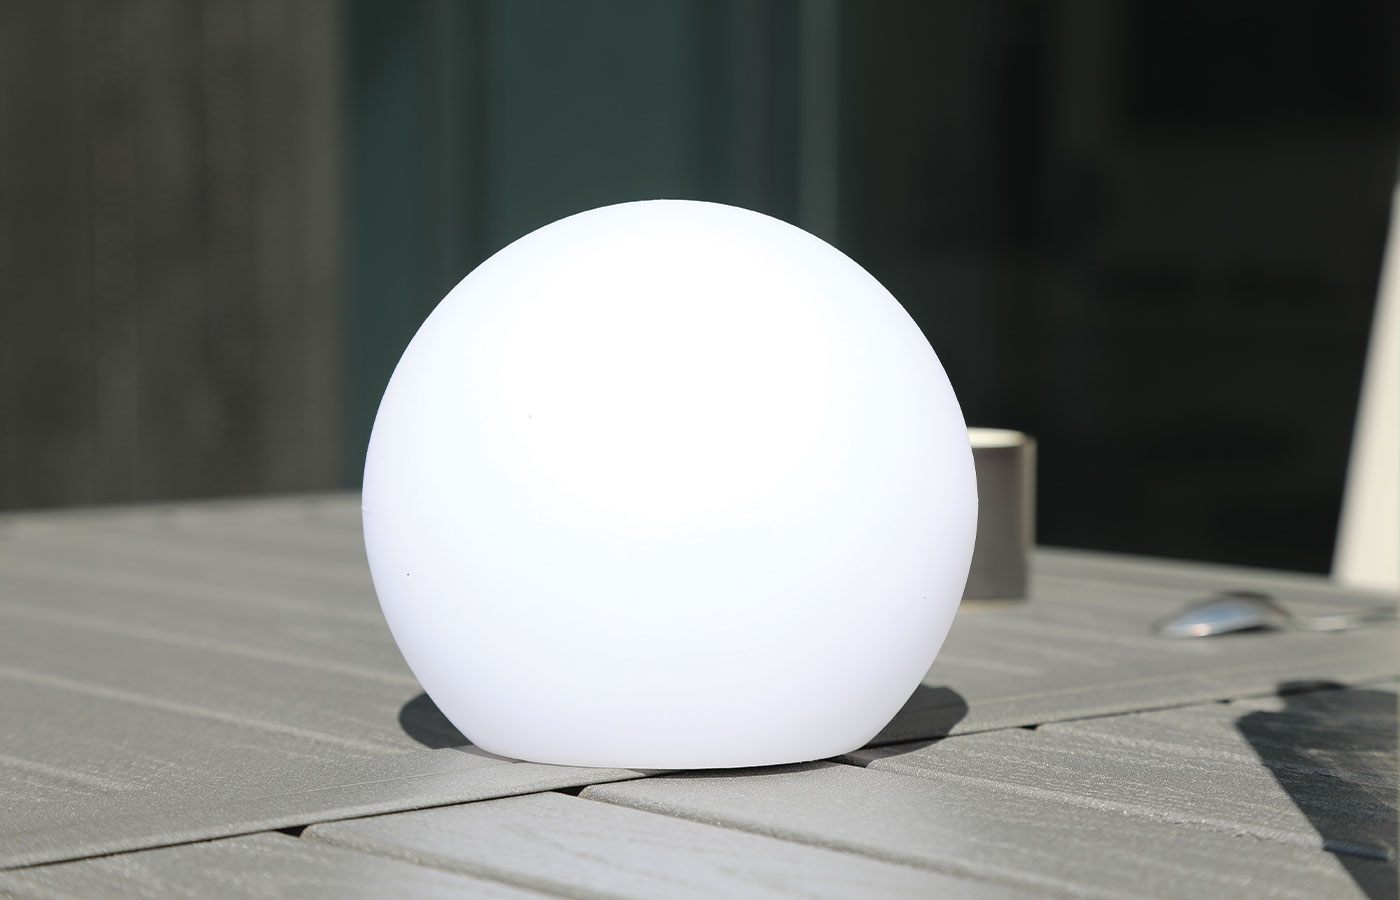 Lampe led boule - Luminaria. Cette lampe d’extérieure dispose de 16 couleurs, elle trouvera sa place aussi bien dans votre intérieur que dans votre extérieur pour une ambiance cocooning. Elle permet d'embellir votre extérieur